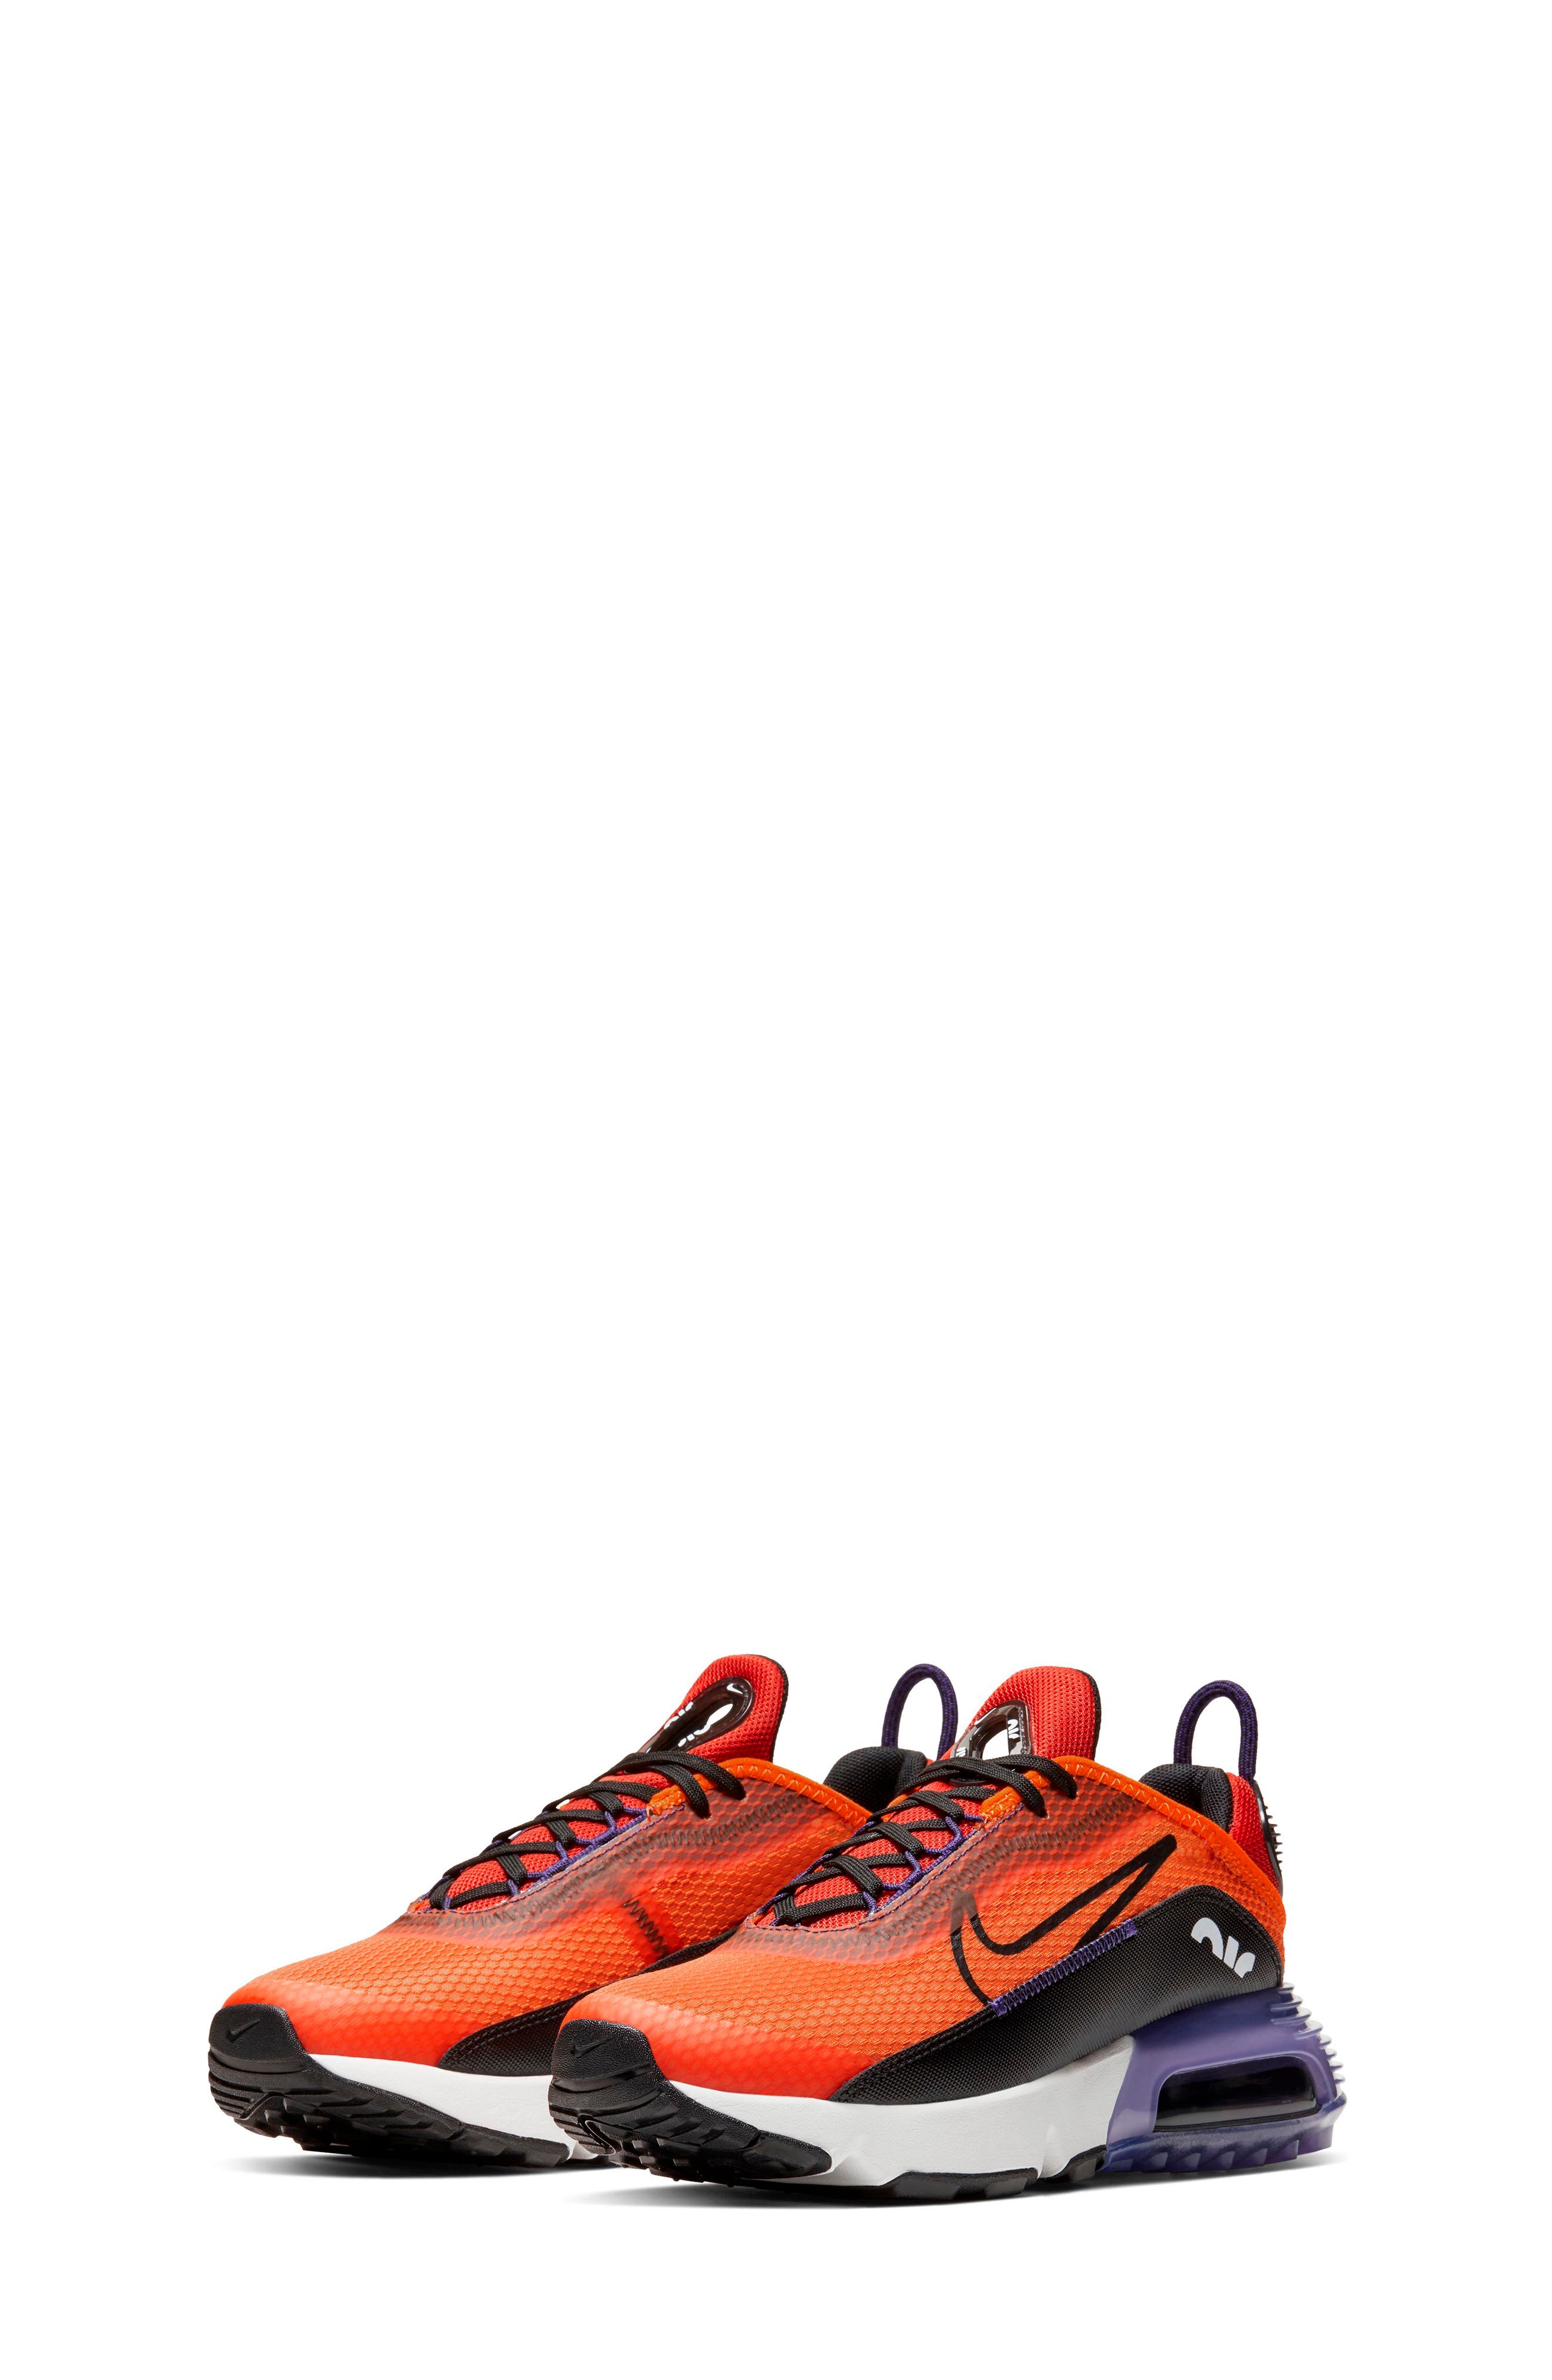 orange athletic shoes